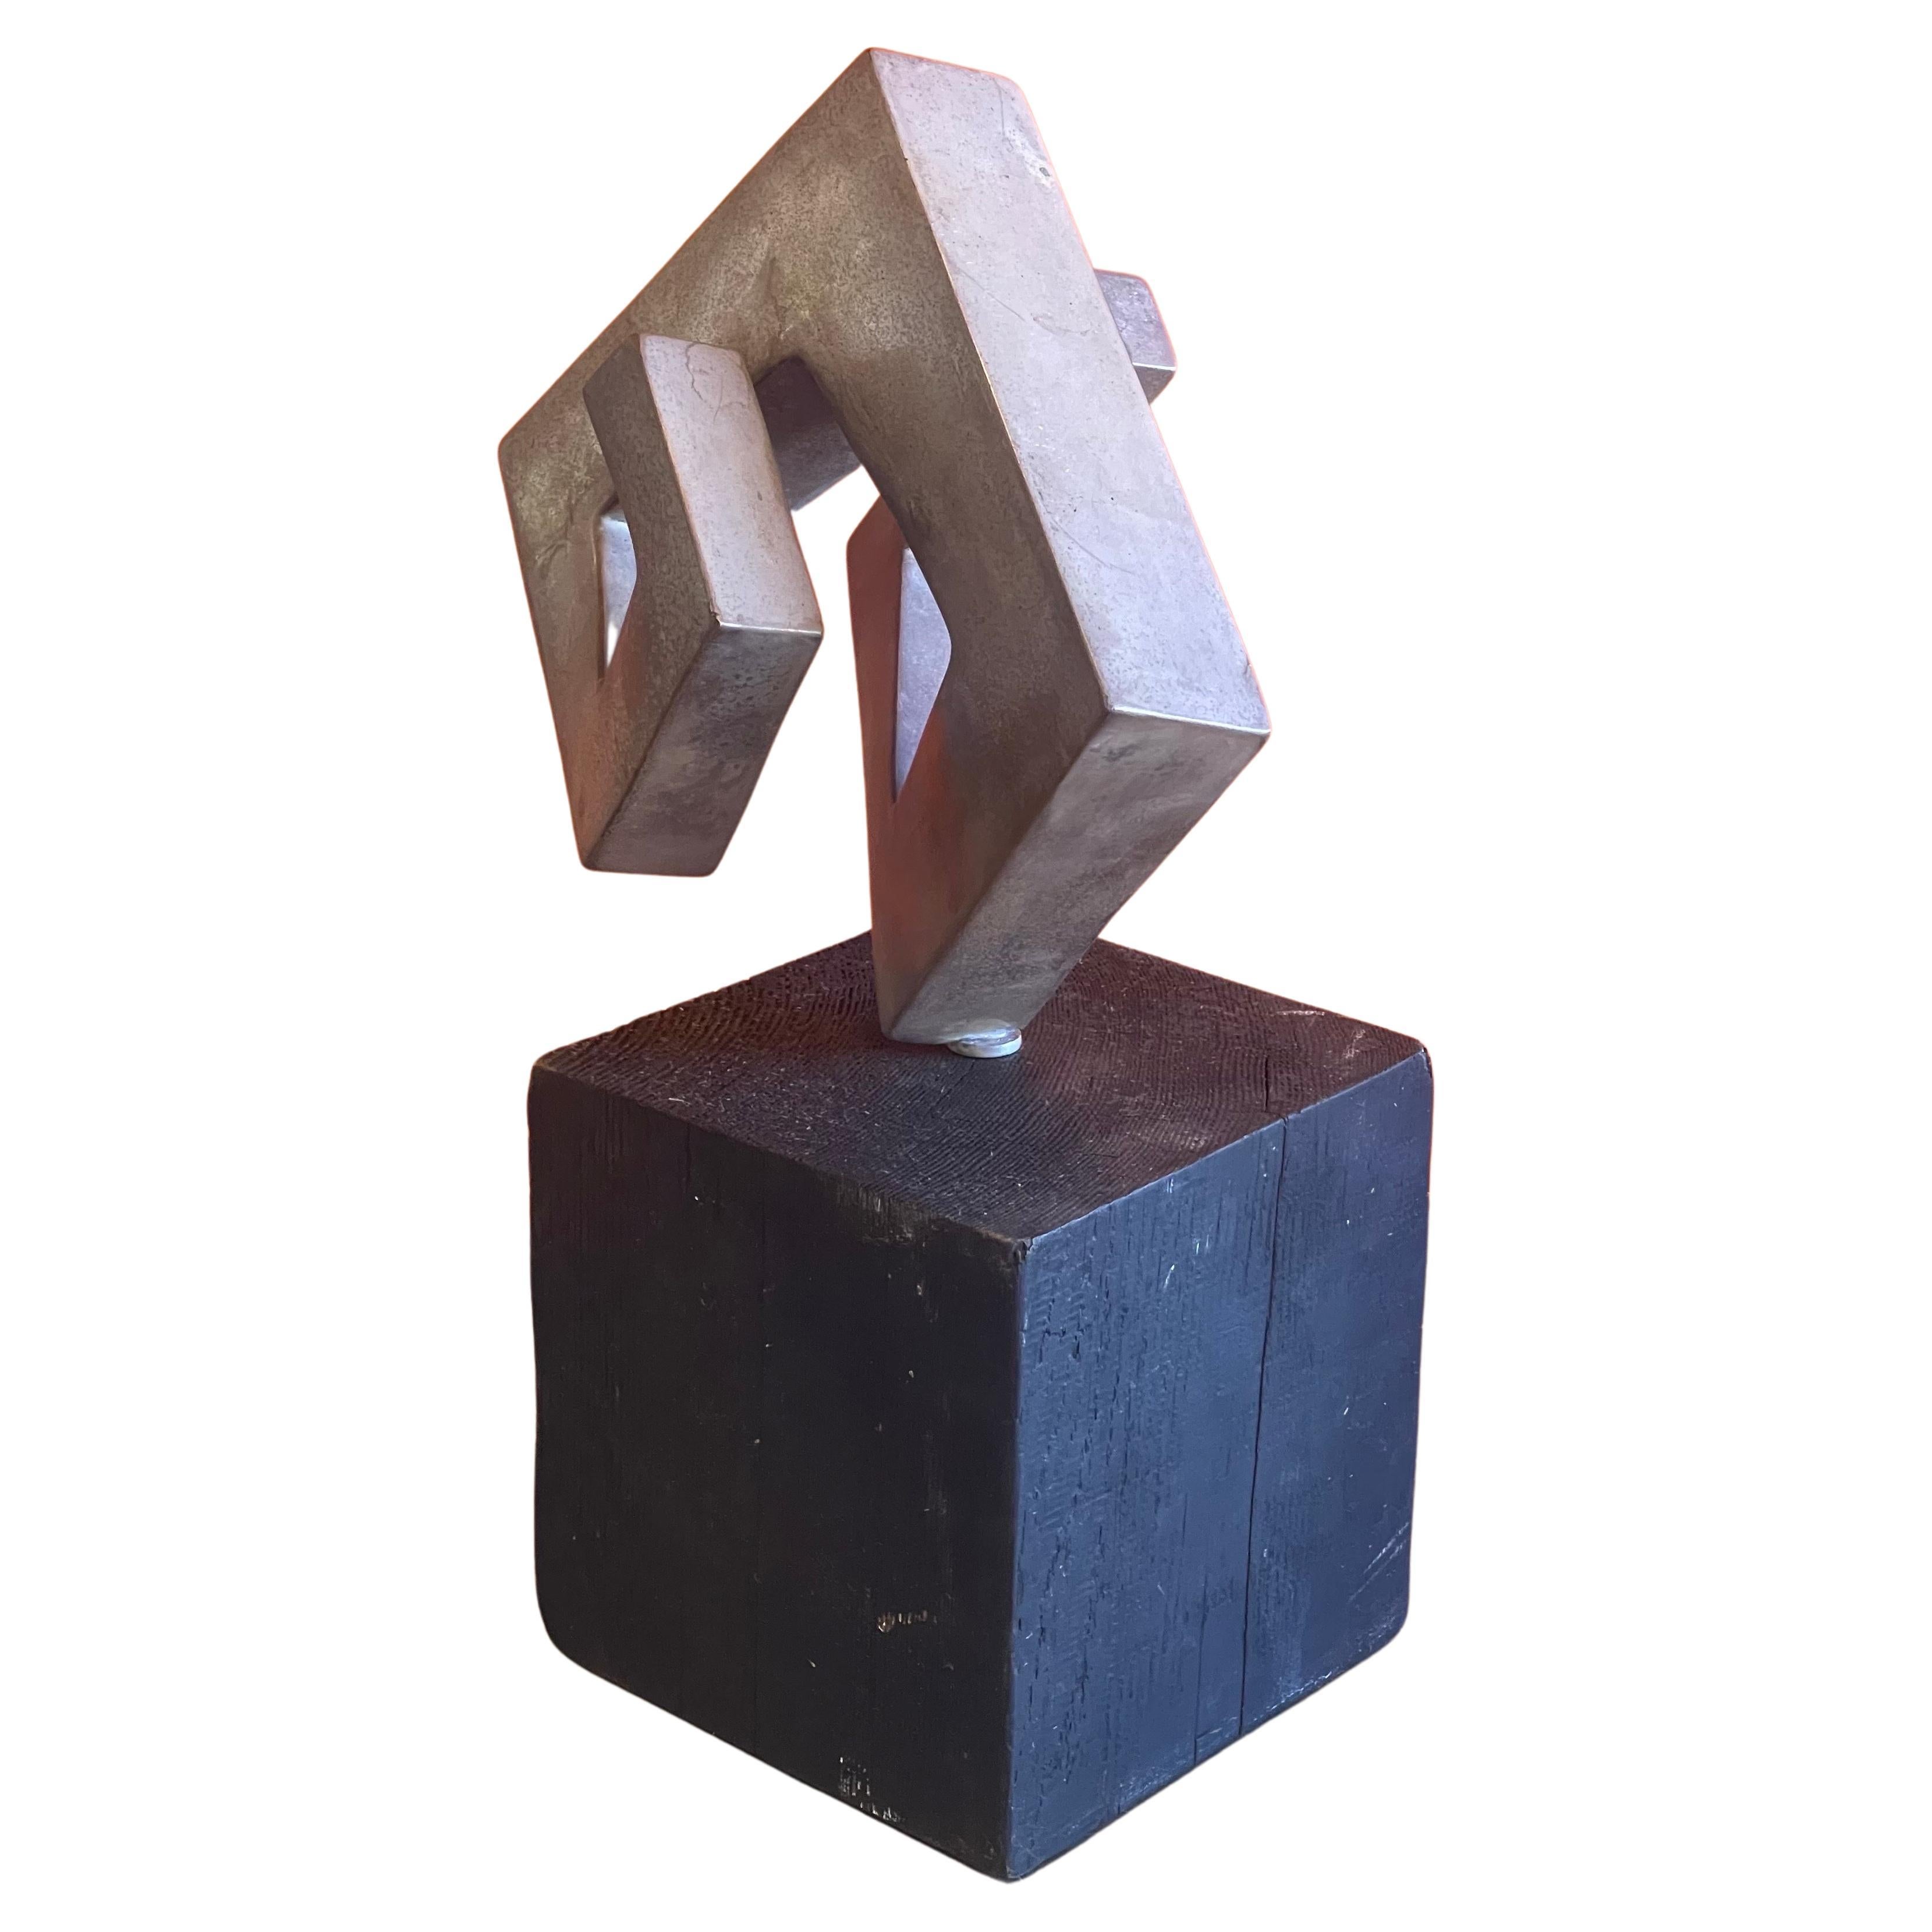 Sculpture rotative abstraite moderniste très cool sur une base en bois noir, vers les années 1970. La sculpture semble être en aluminium (non positif - non magnétique) et peut pivoter à 360 degrés sur la base pour donner à la sculpture plusieurs